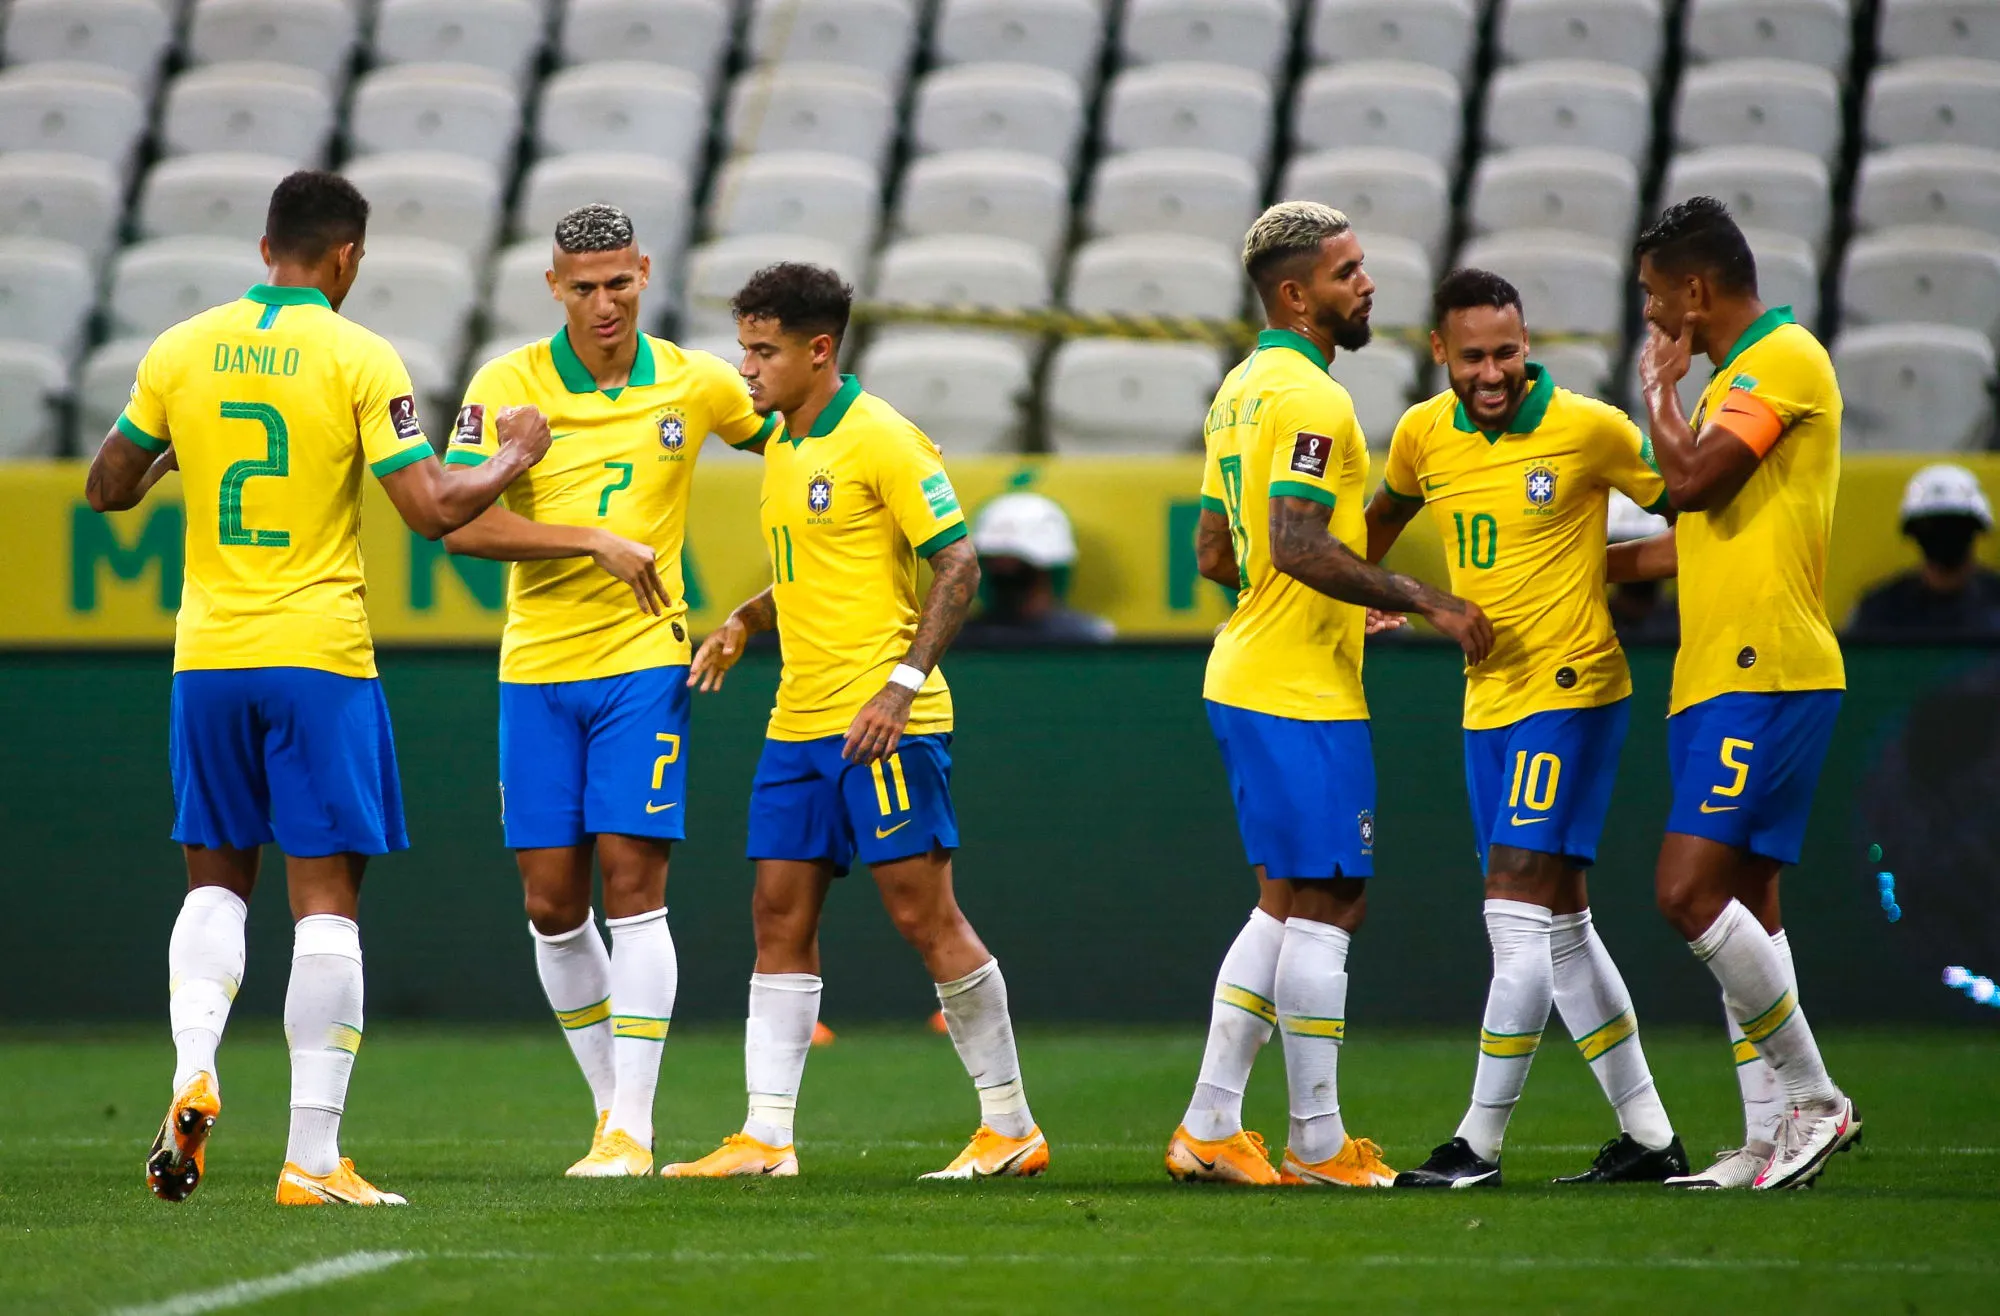 Pronostic Brésil Allemagne : Analyse, cote et pronostic du match des Jeux Olympiques